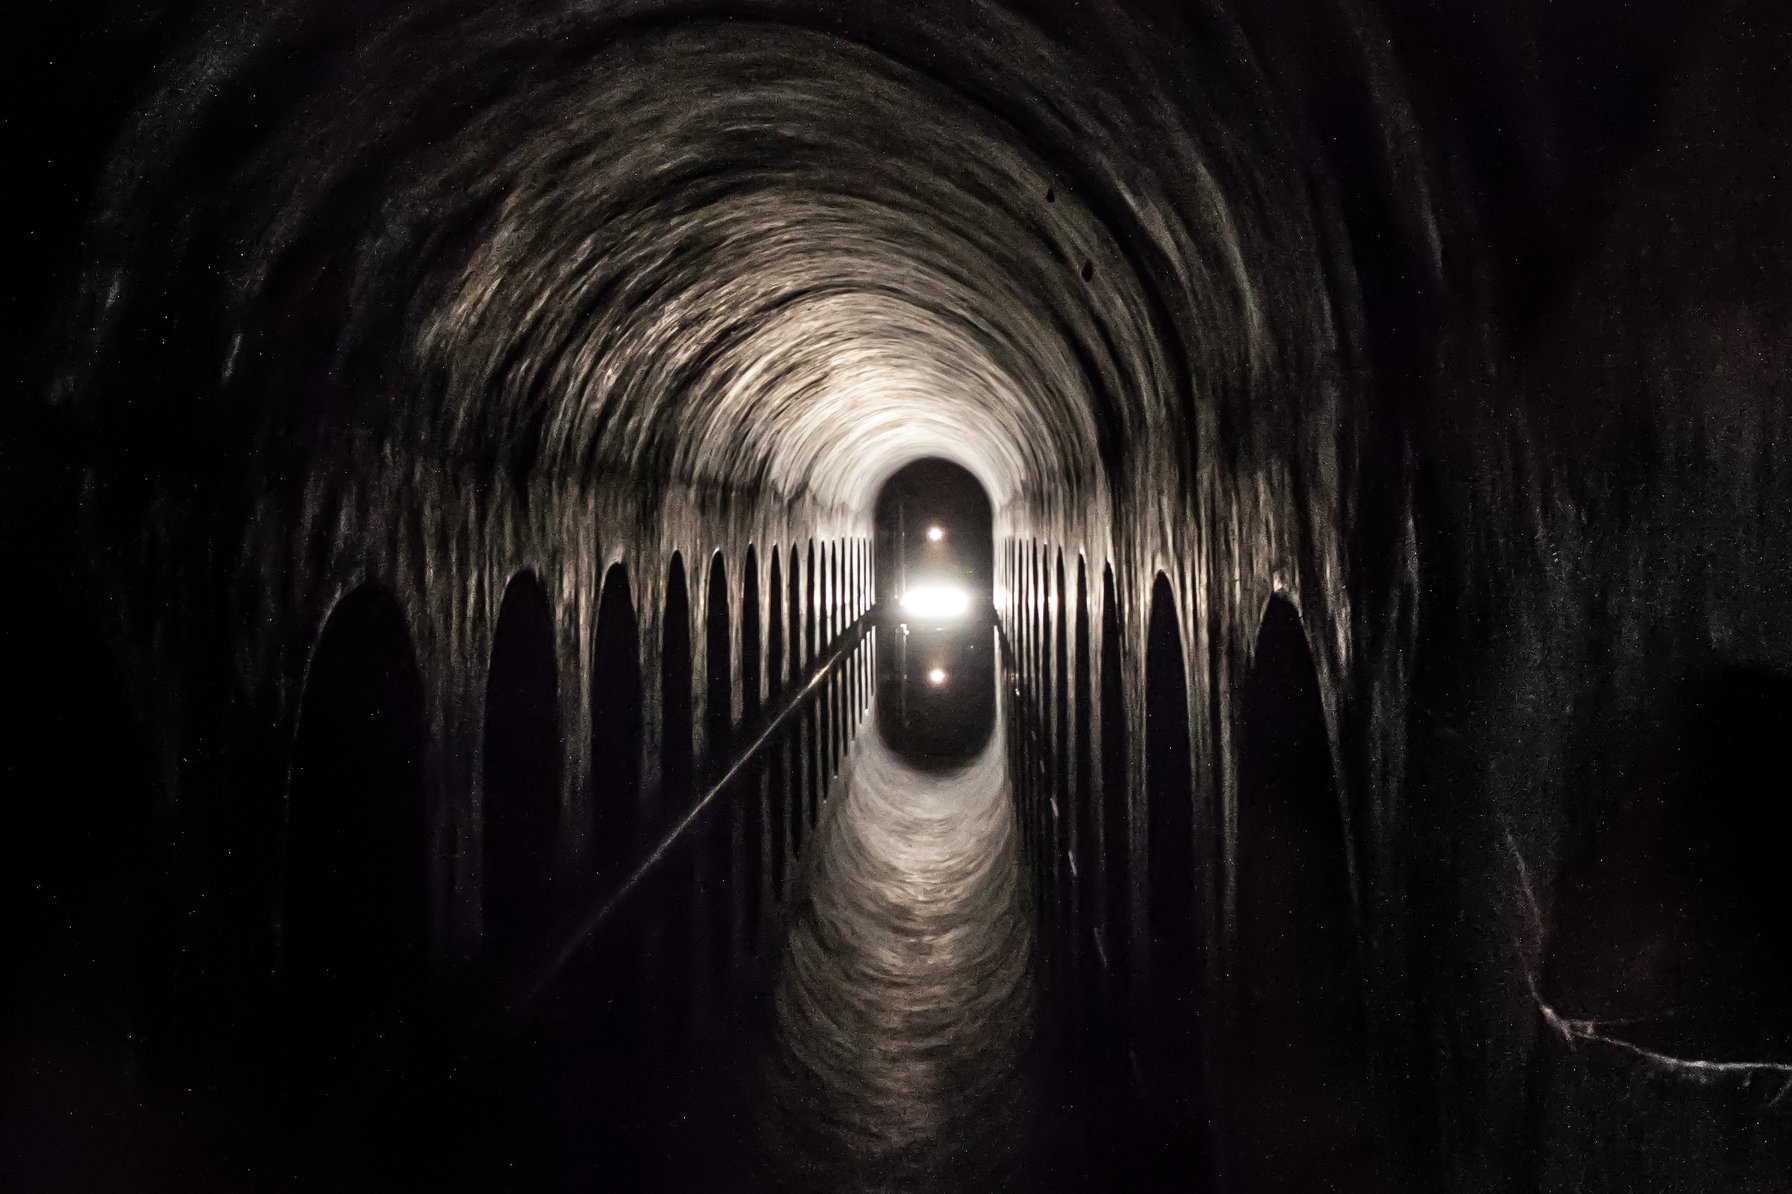 L'acquedotto di Sangano, una vera e propria “Cattedrale dell’Acqua”